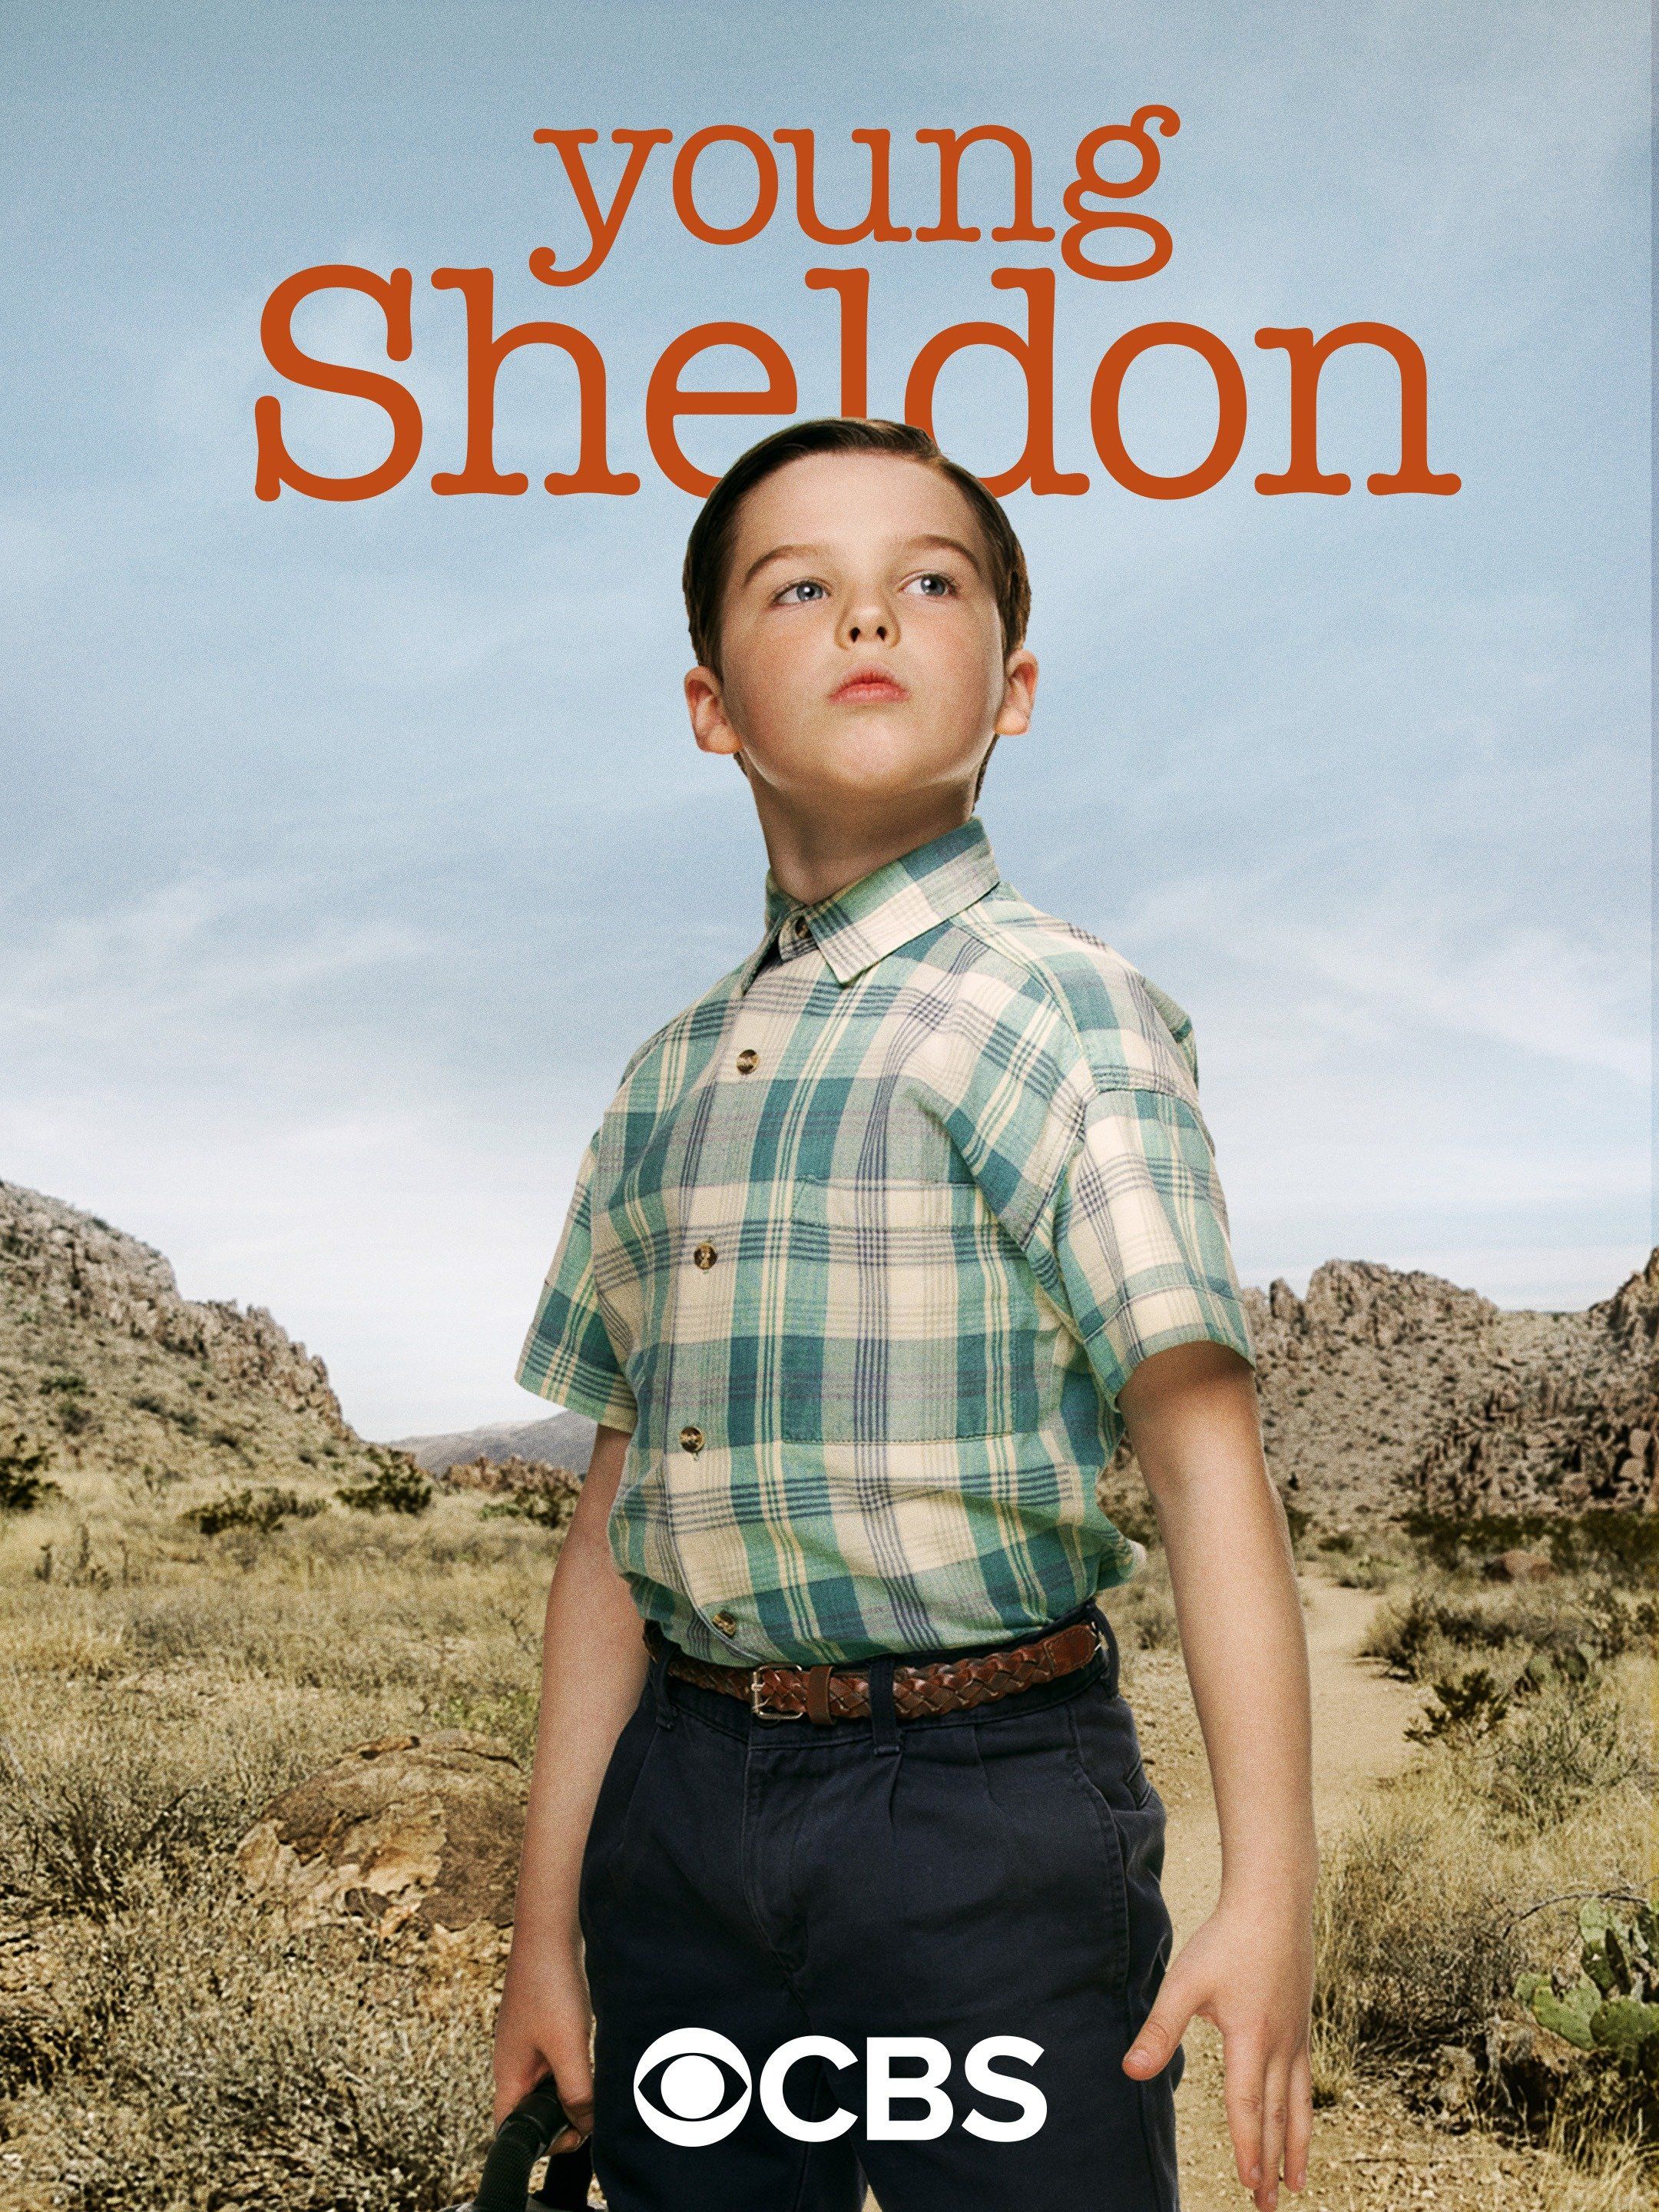 Young Sheldon, CBS